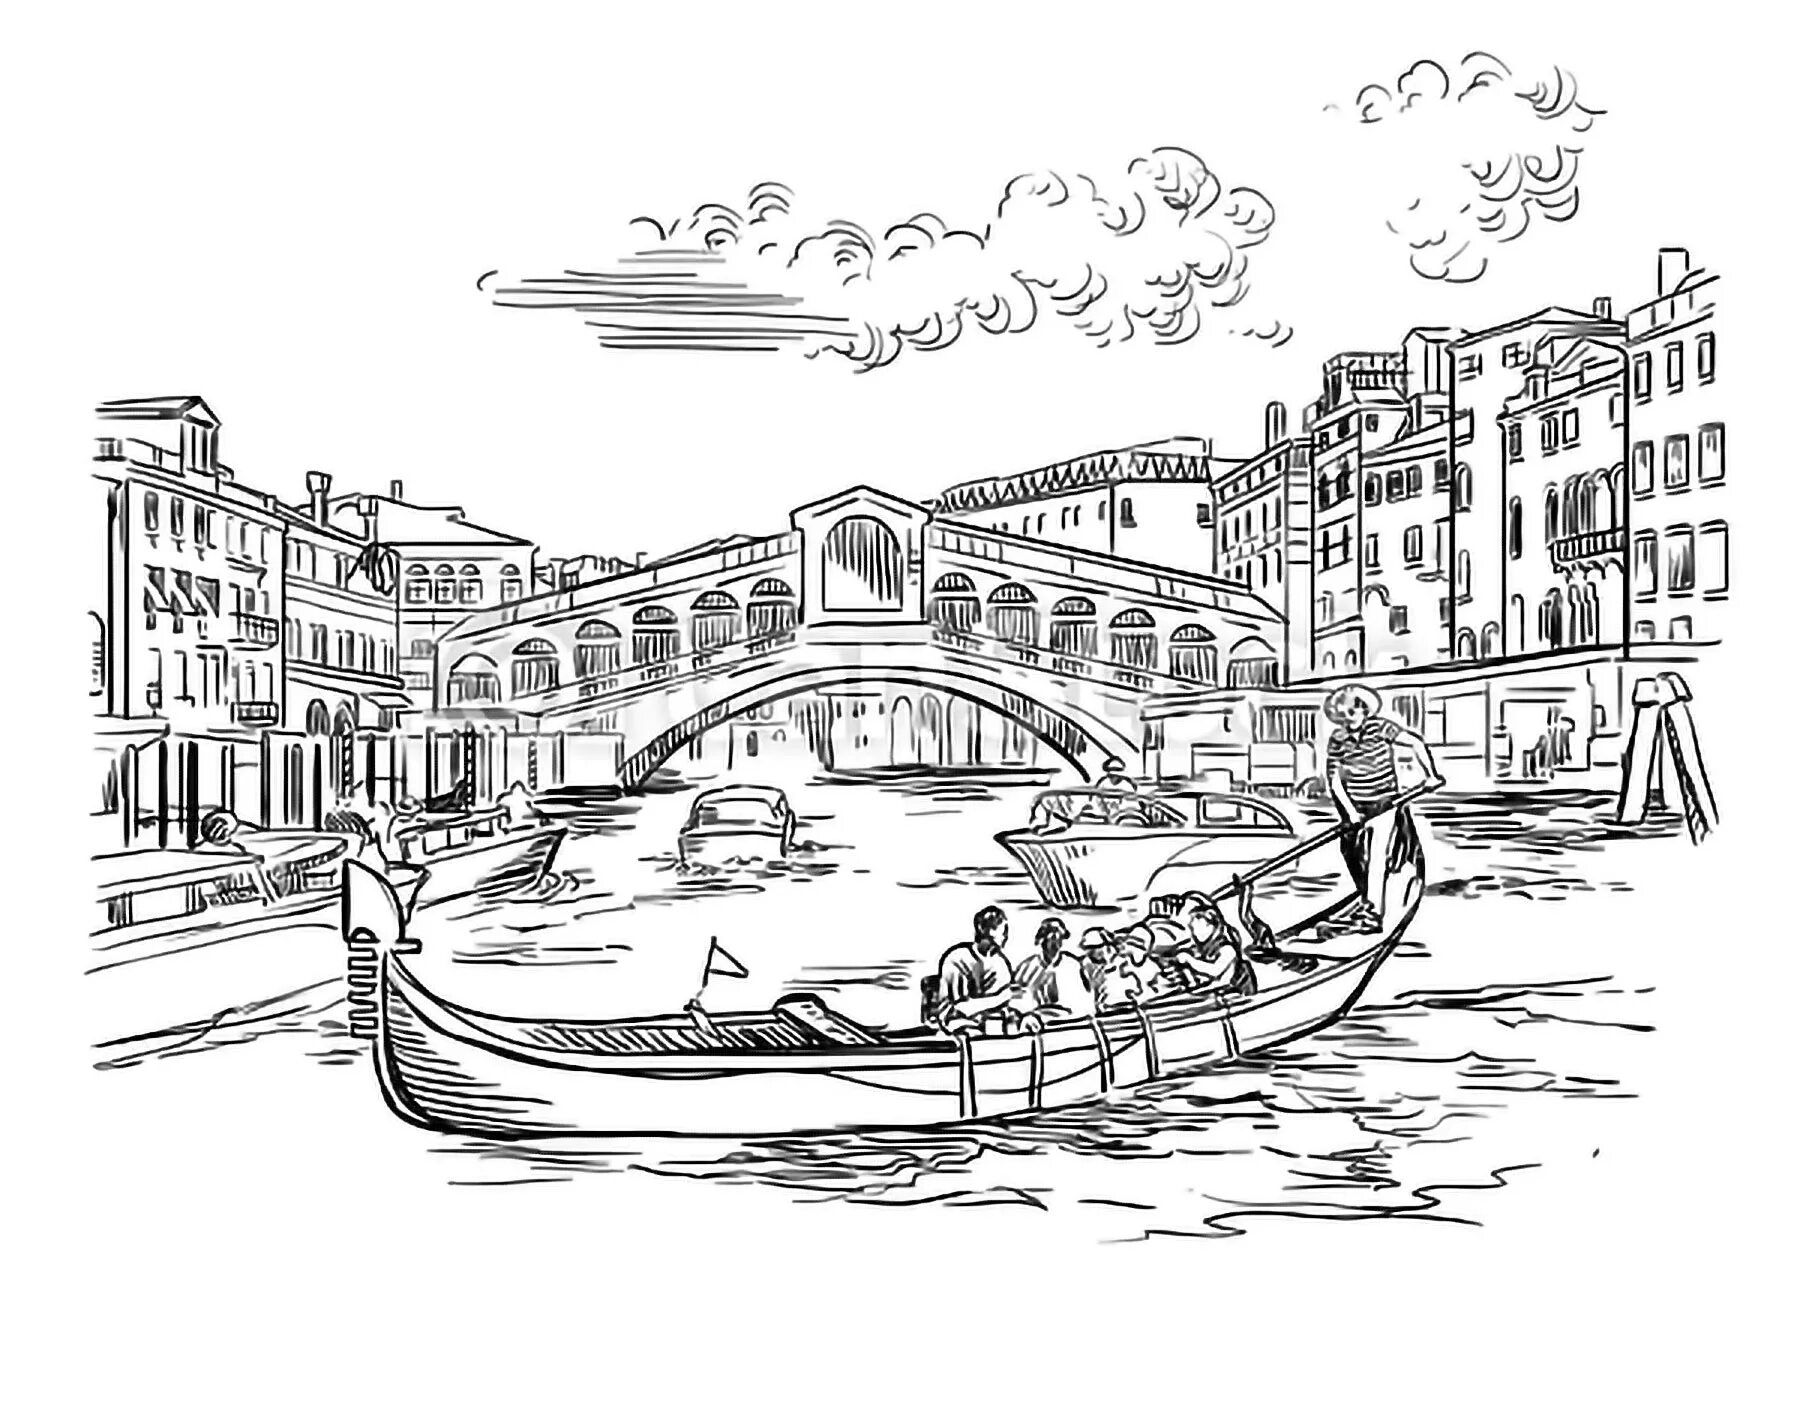 Venice #6